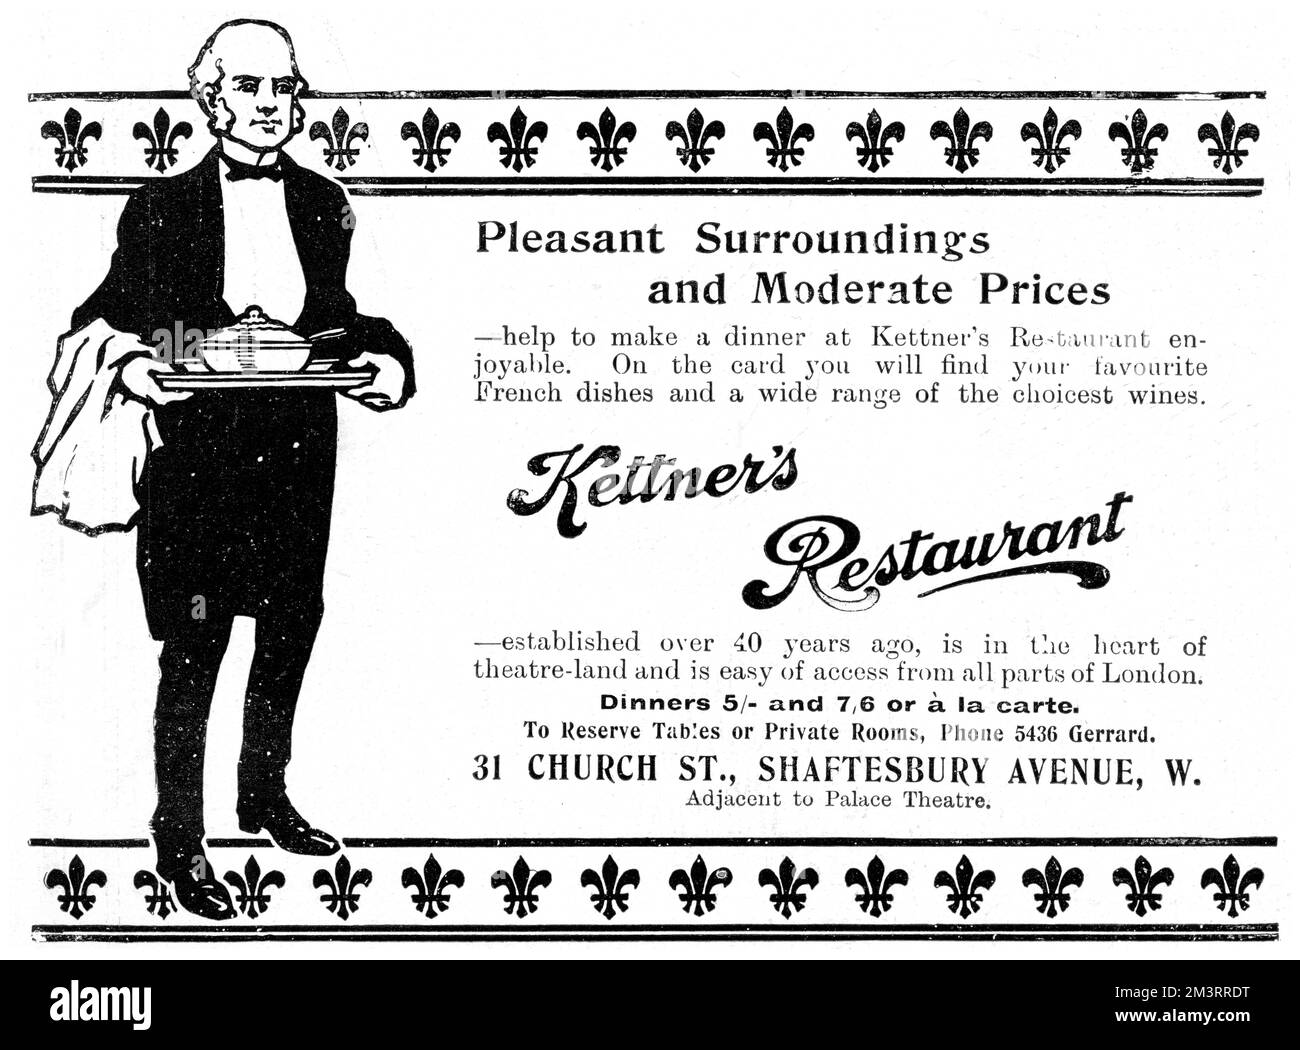 Werbung für das Restaurant Kettner's mit Schwerpunkt auf „angenehmer Umgebung und moderaten Preisen“. Datum: 1907 Stockfoto